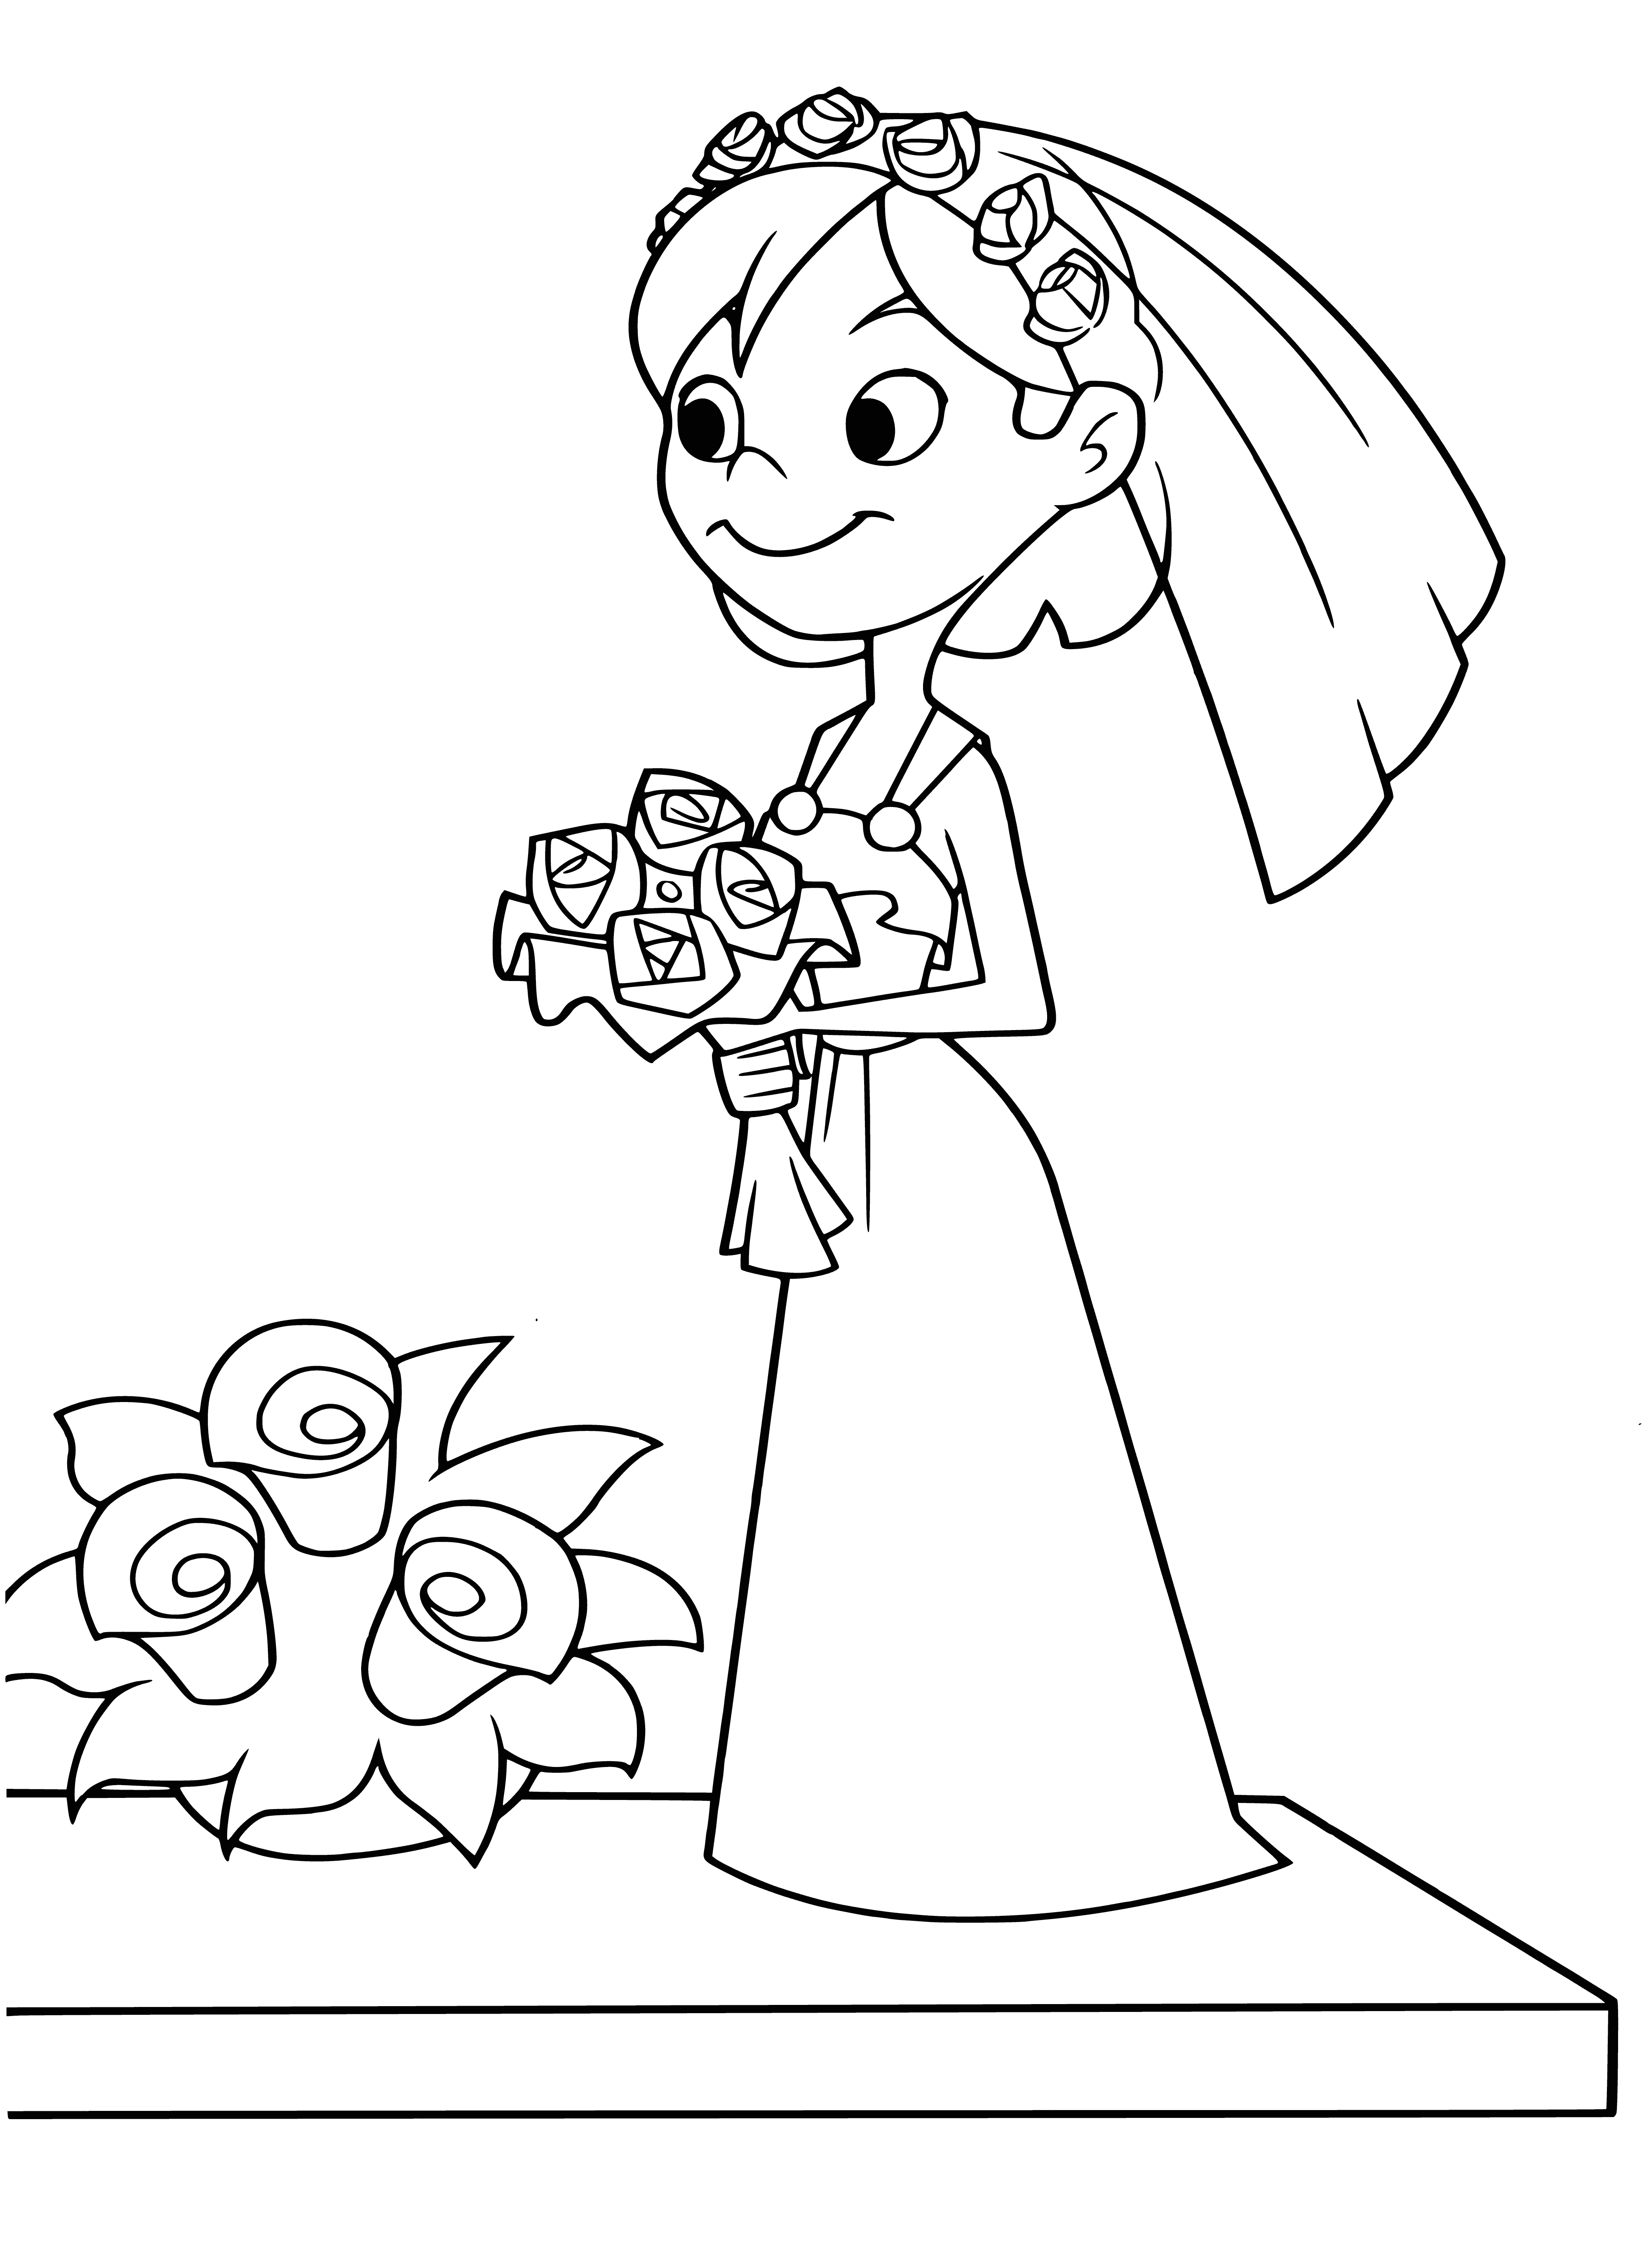 Ellie's bride coloring page